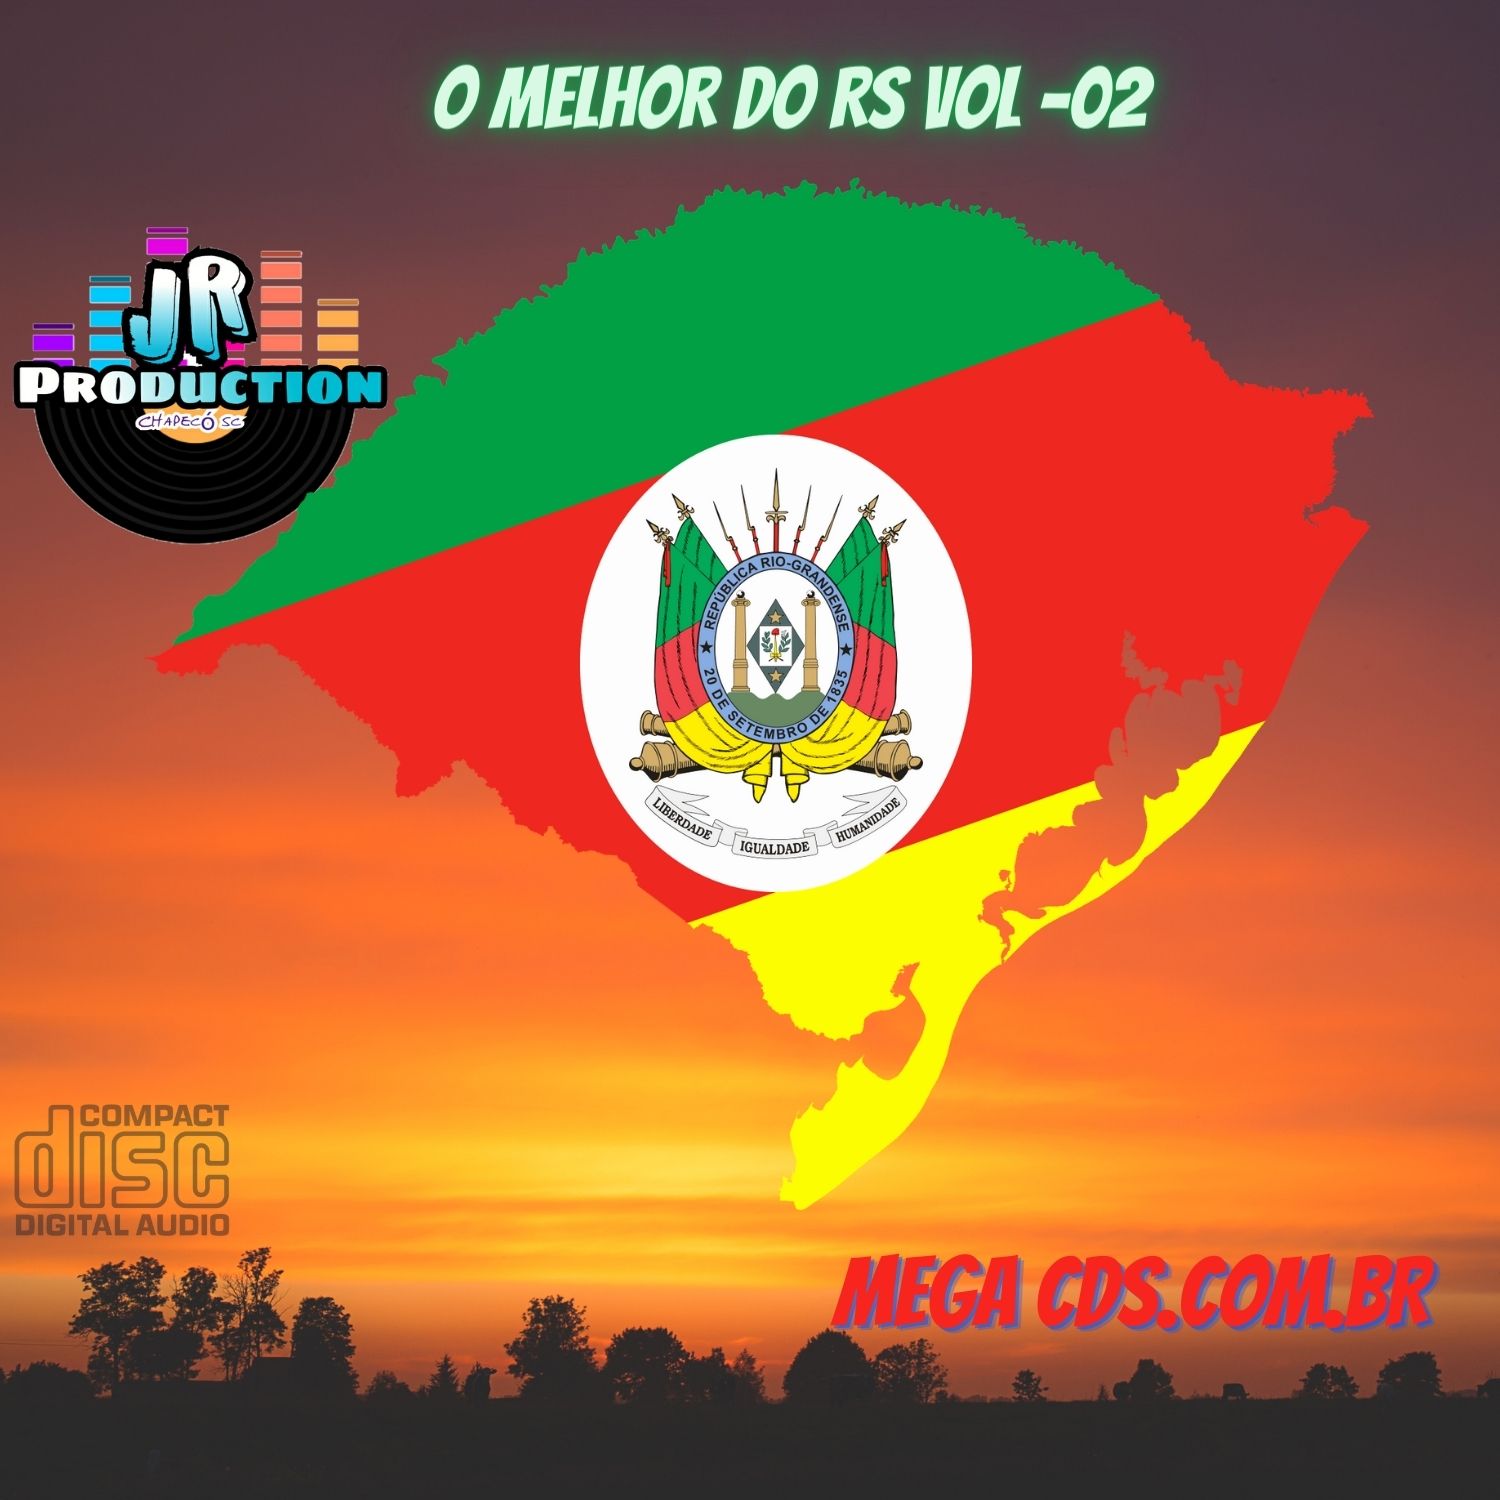 O MELHOR DO RS BY JR PRODUCTIONS VOL -02